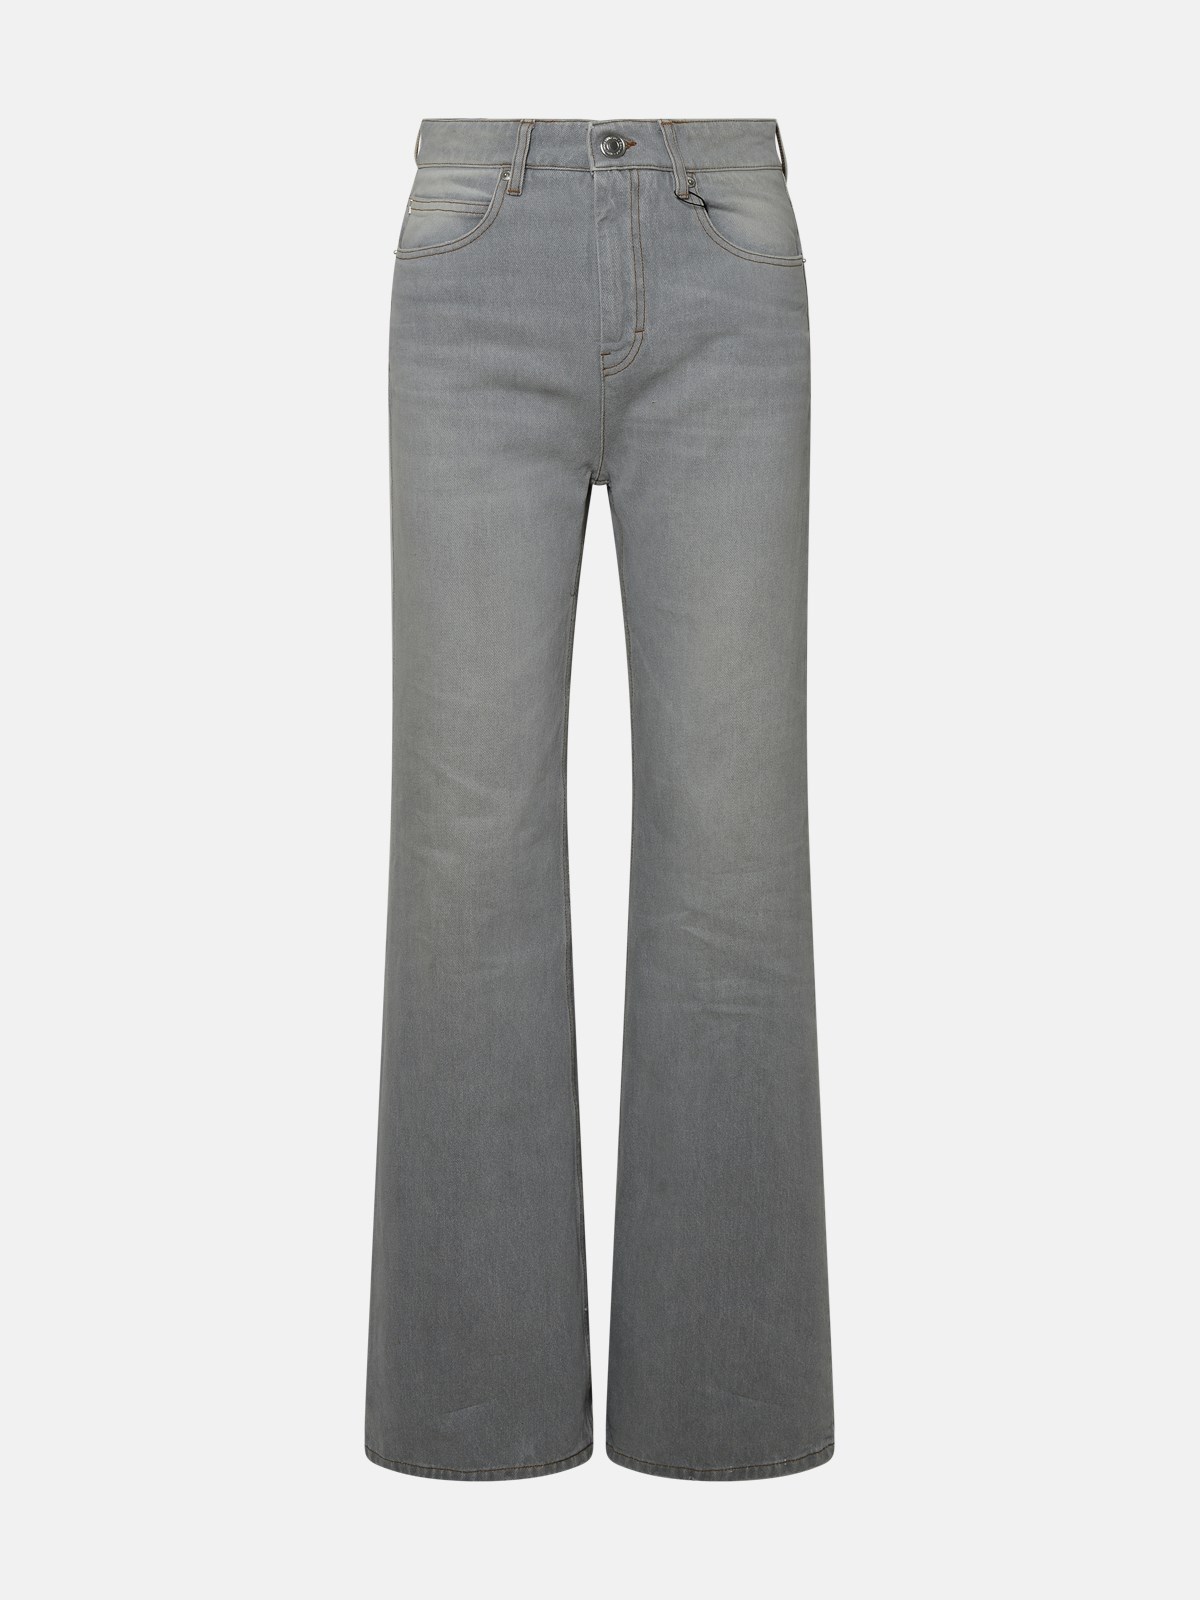 Ami Alexandre Mattiussi Kids' Gray Cotton Jeans In Grey